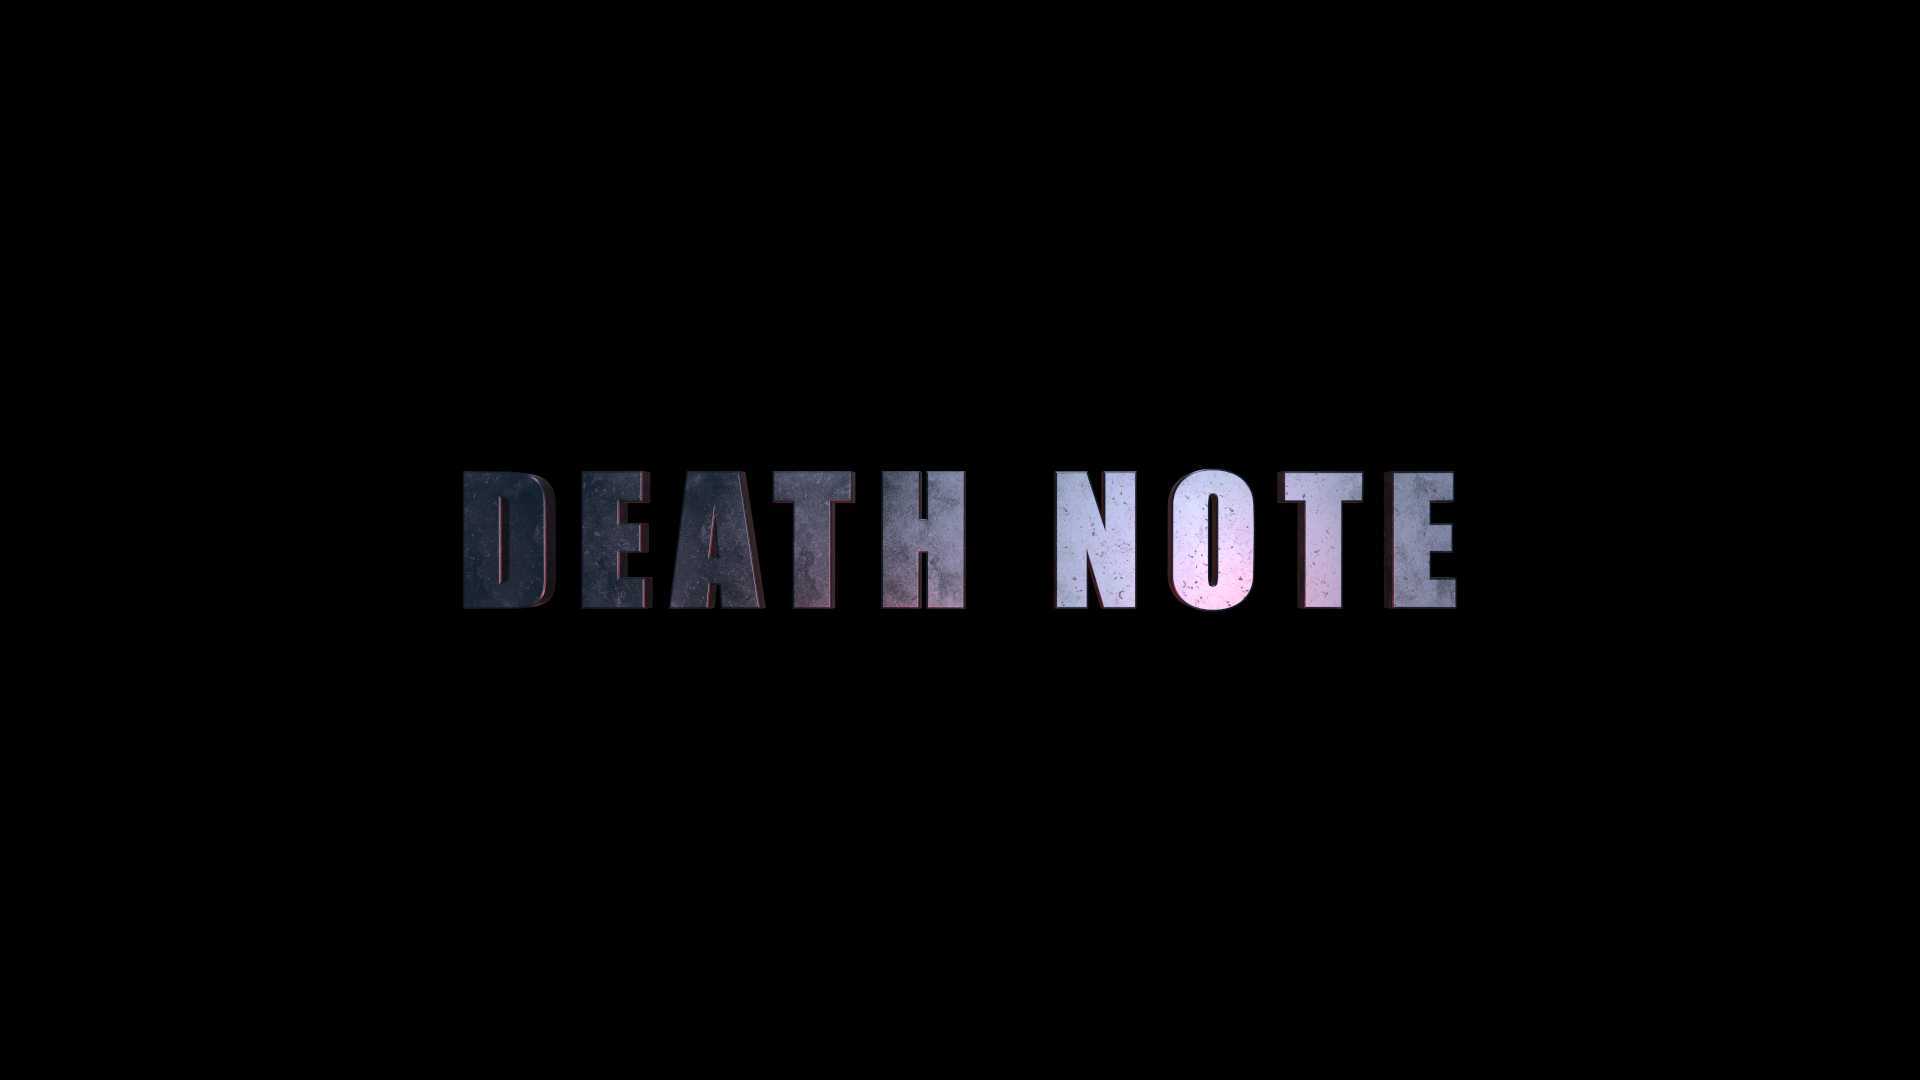 死亡笔记 《DEATH NOTE》 勿以恶小而为之 勿以善小而不为